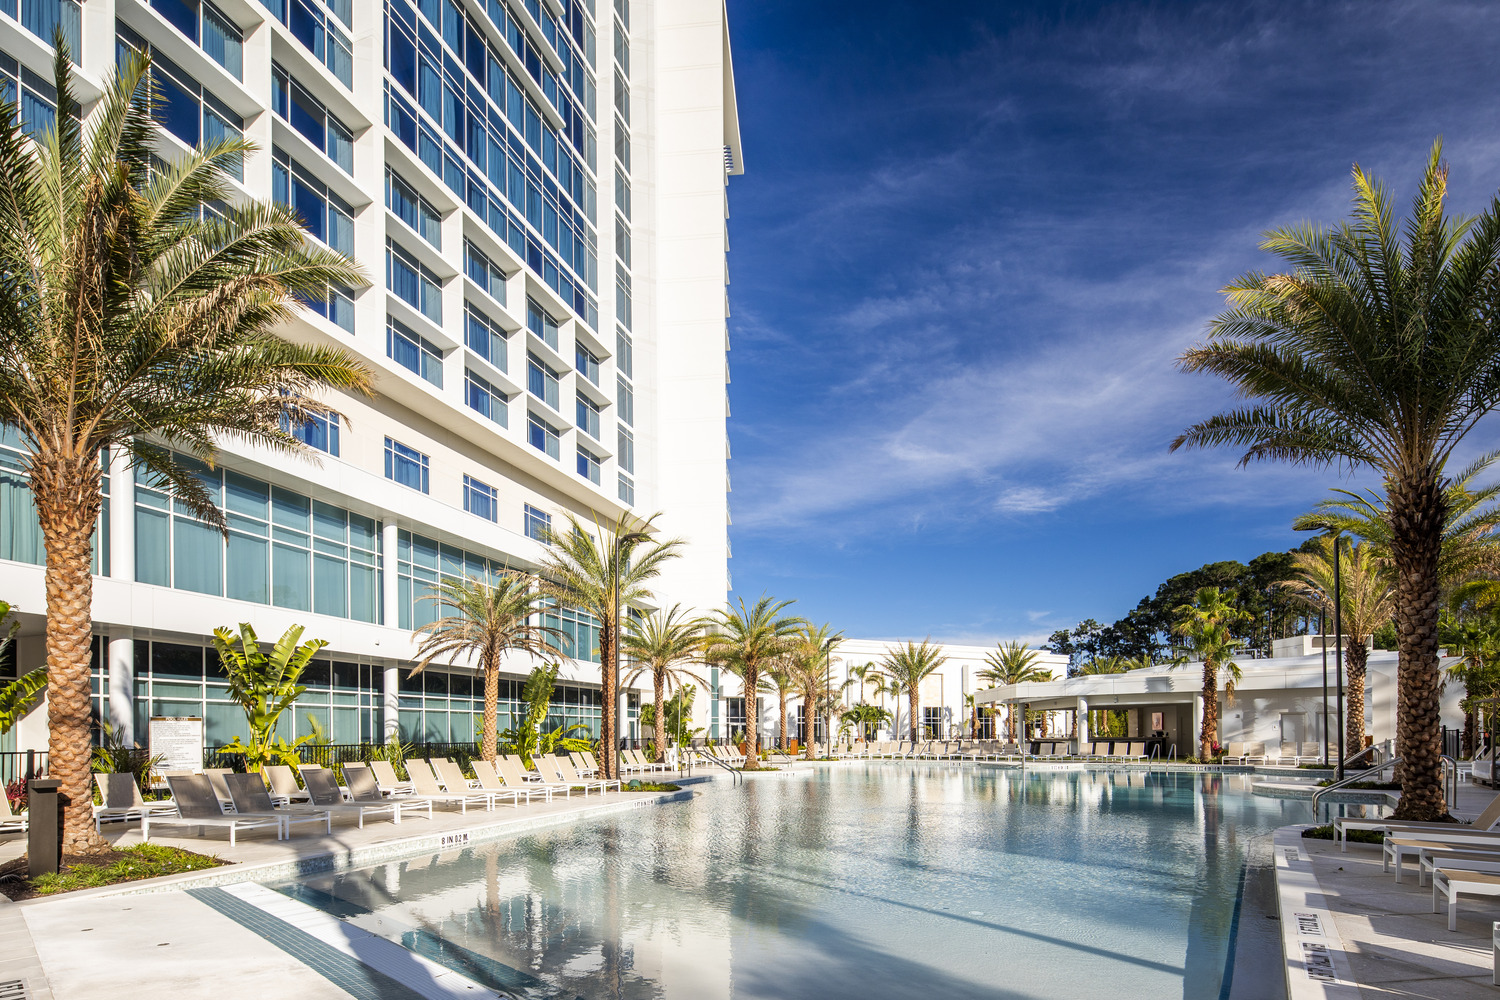 Une piscine avec chaises longues et palmiers devant un hôtel.